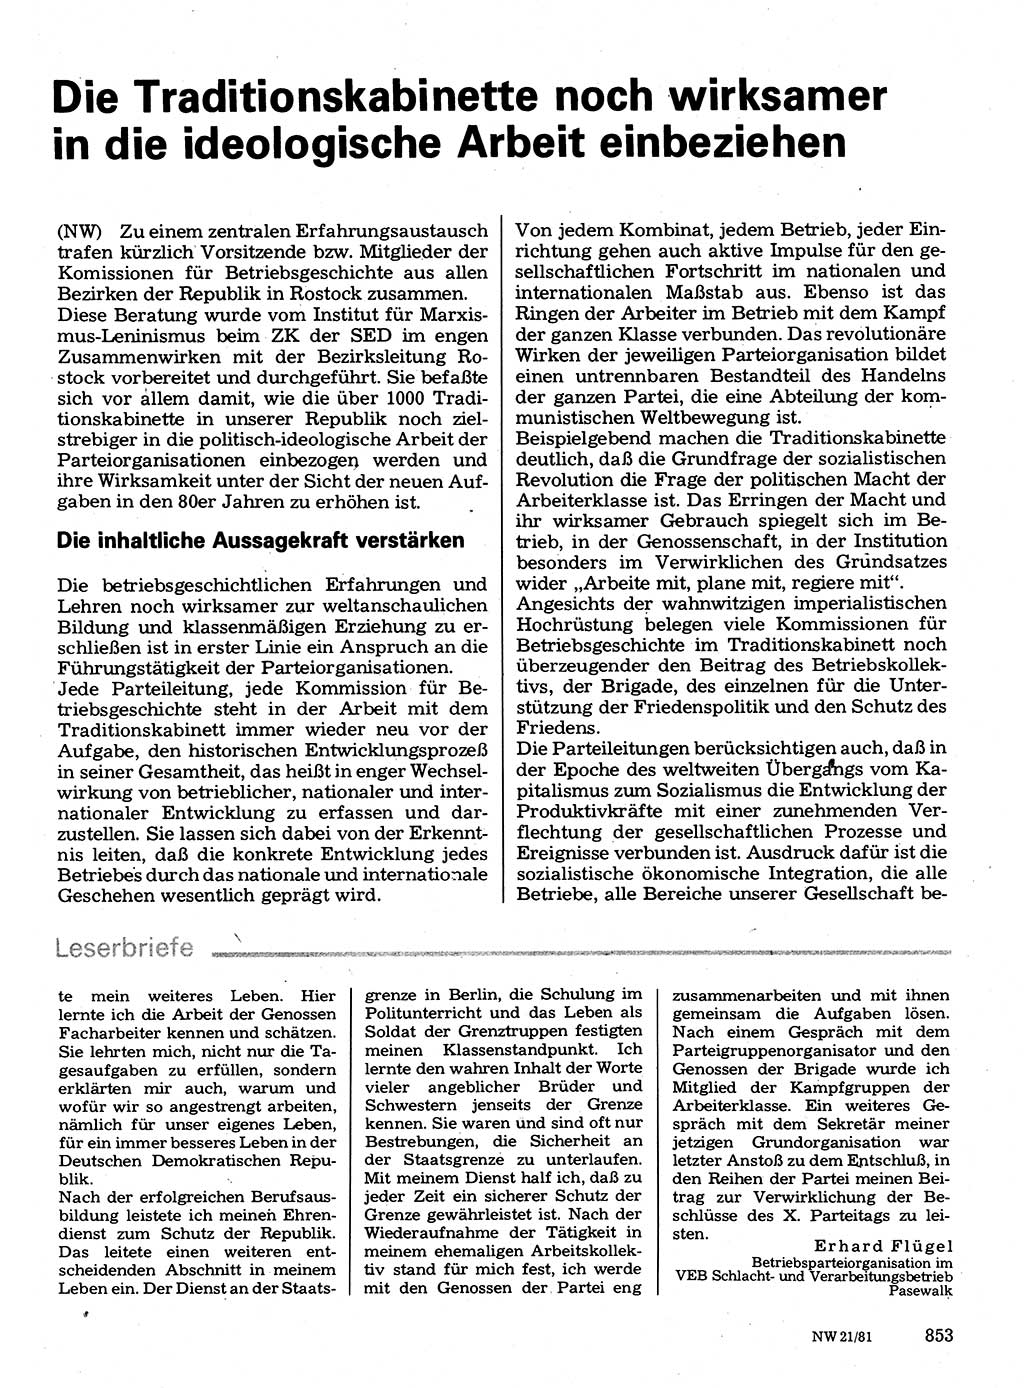 Neuer Weg (NW), Organ des Zentralkomitees (ZK) der SED (Sozialistische Einheitspartei Deutschlands) für Fragen des Parteilebens, 36. Jahrgang [Deutsche Demokratische Republik (DDR)] 1981, Seite 853 (NW ZK SED DDR 1981, S. 853)